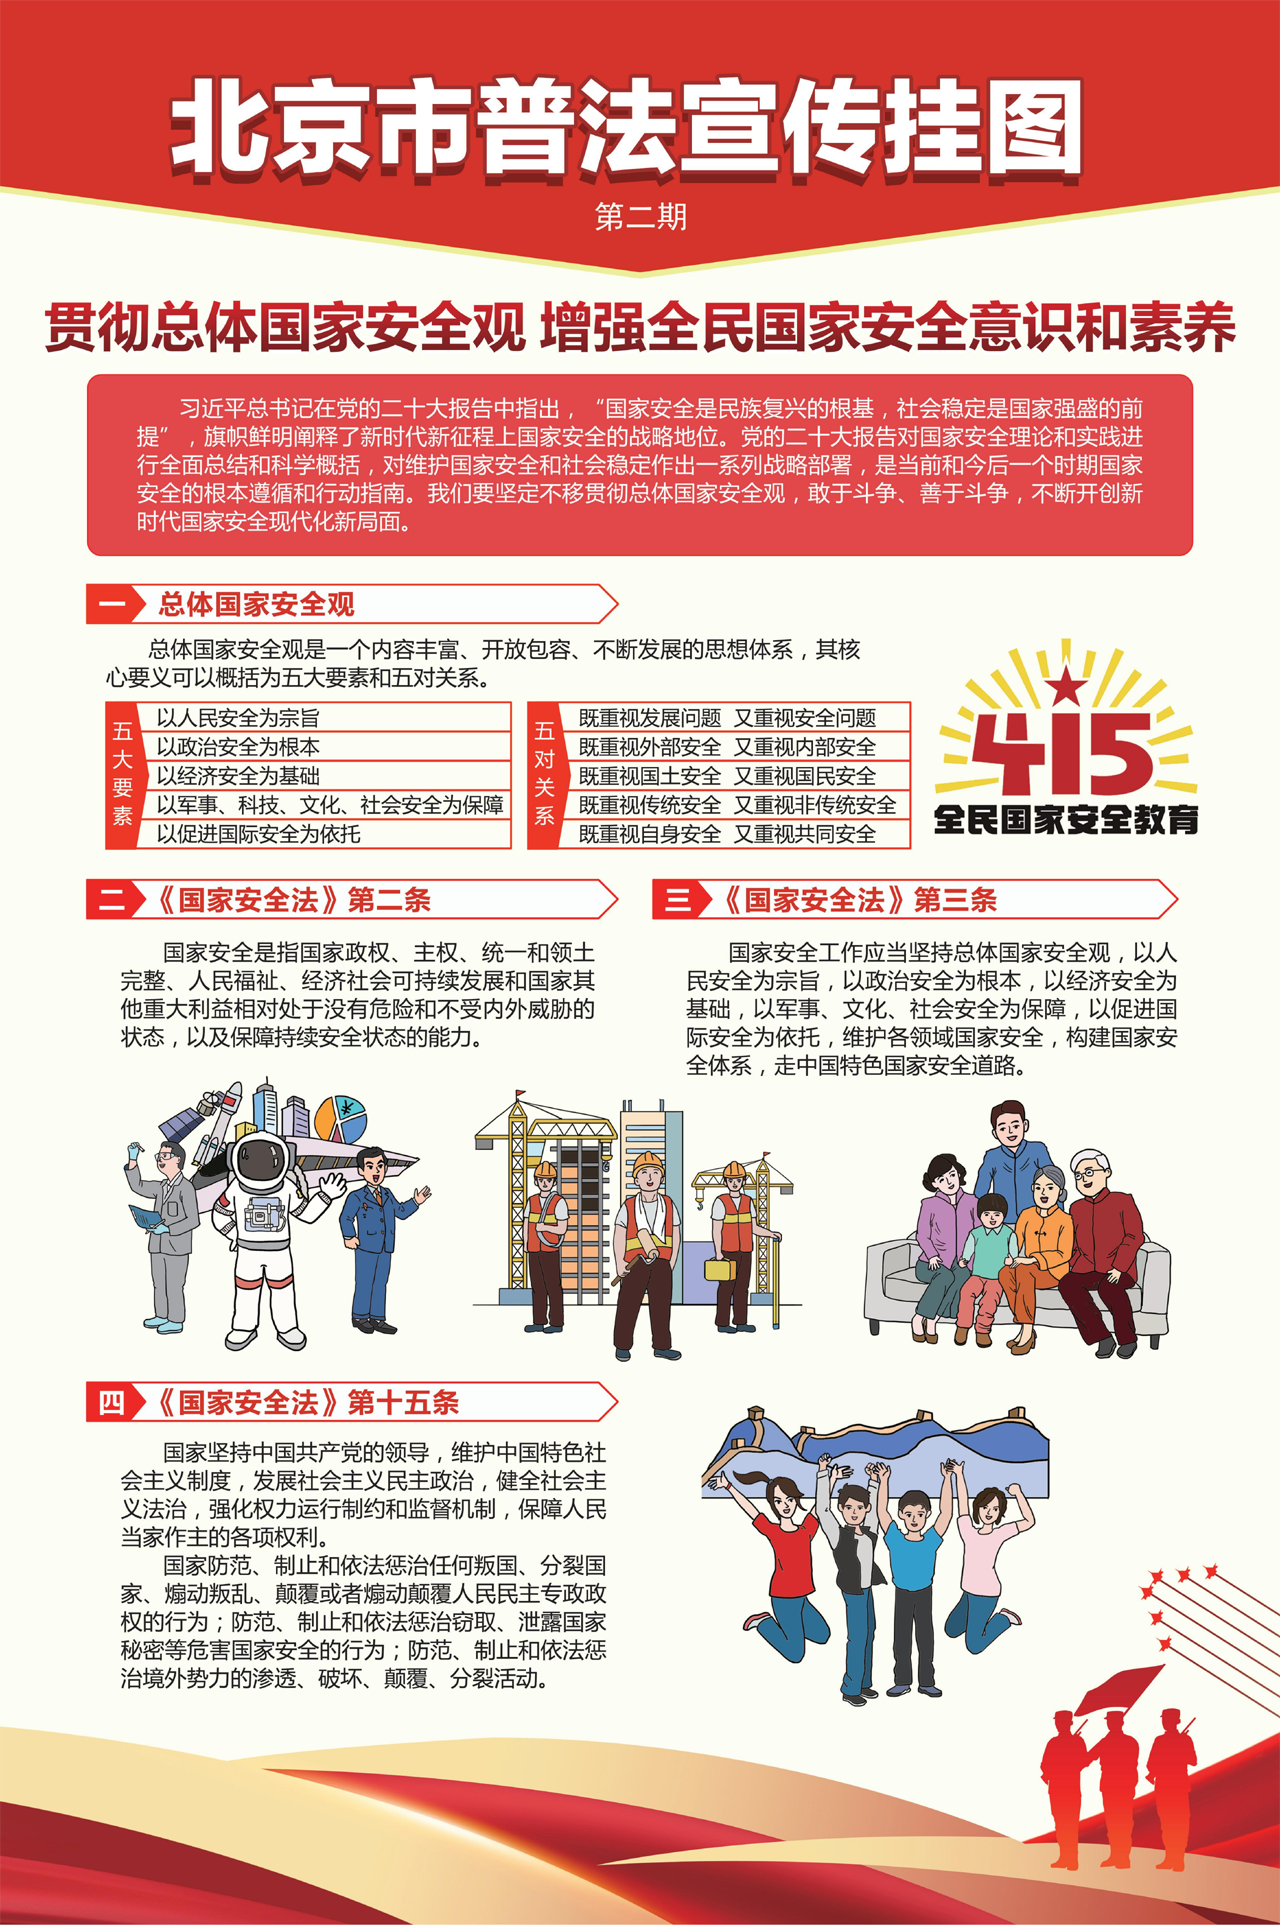 北京市普法宣传挂图第二期-1